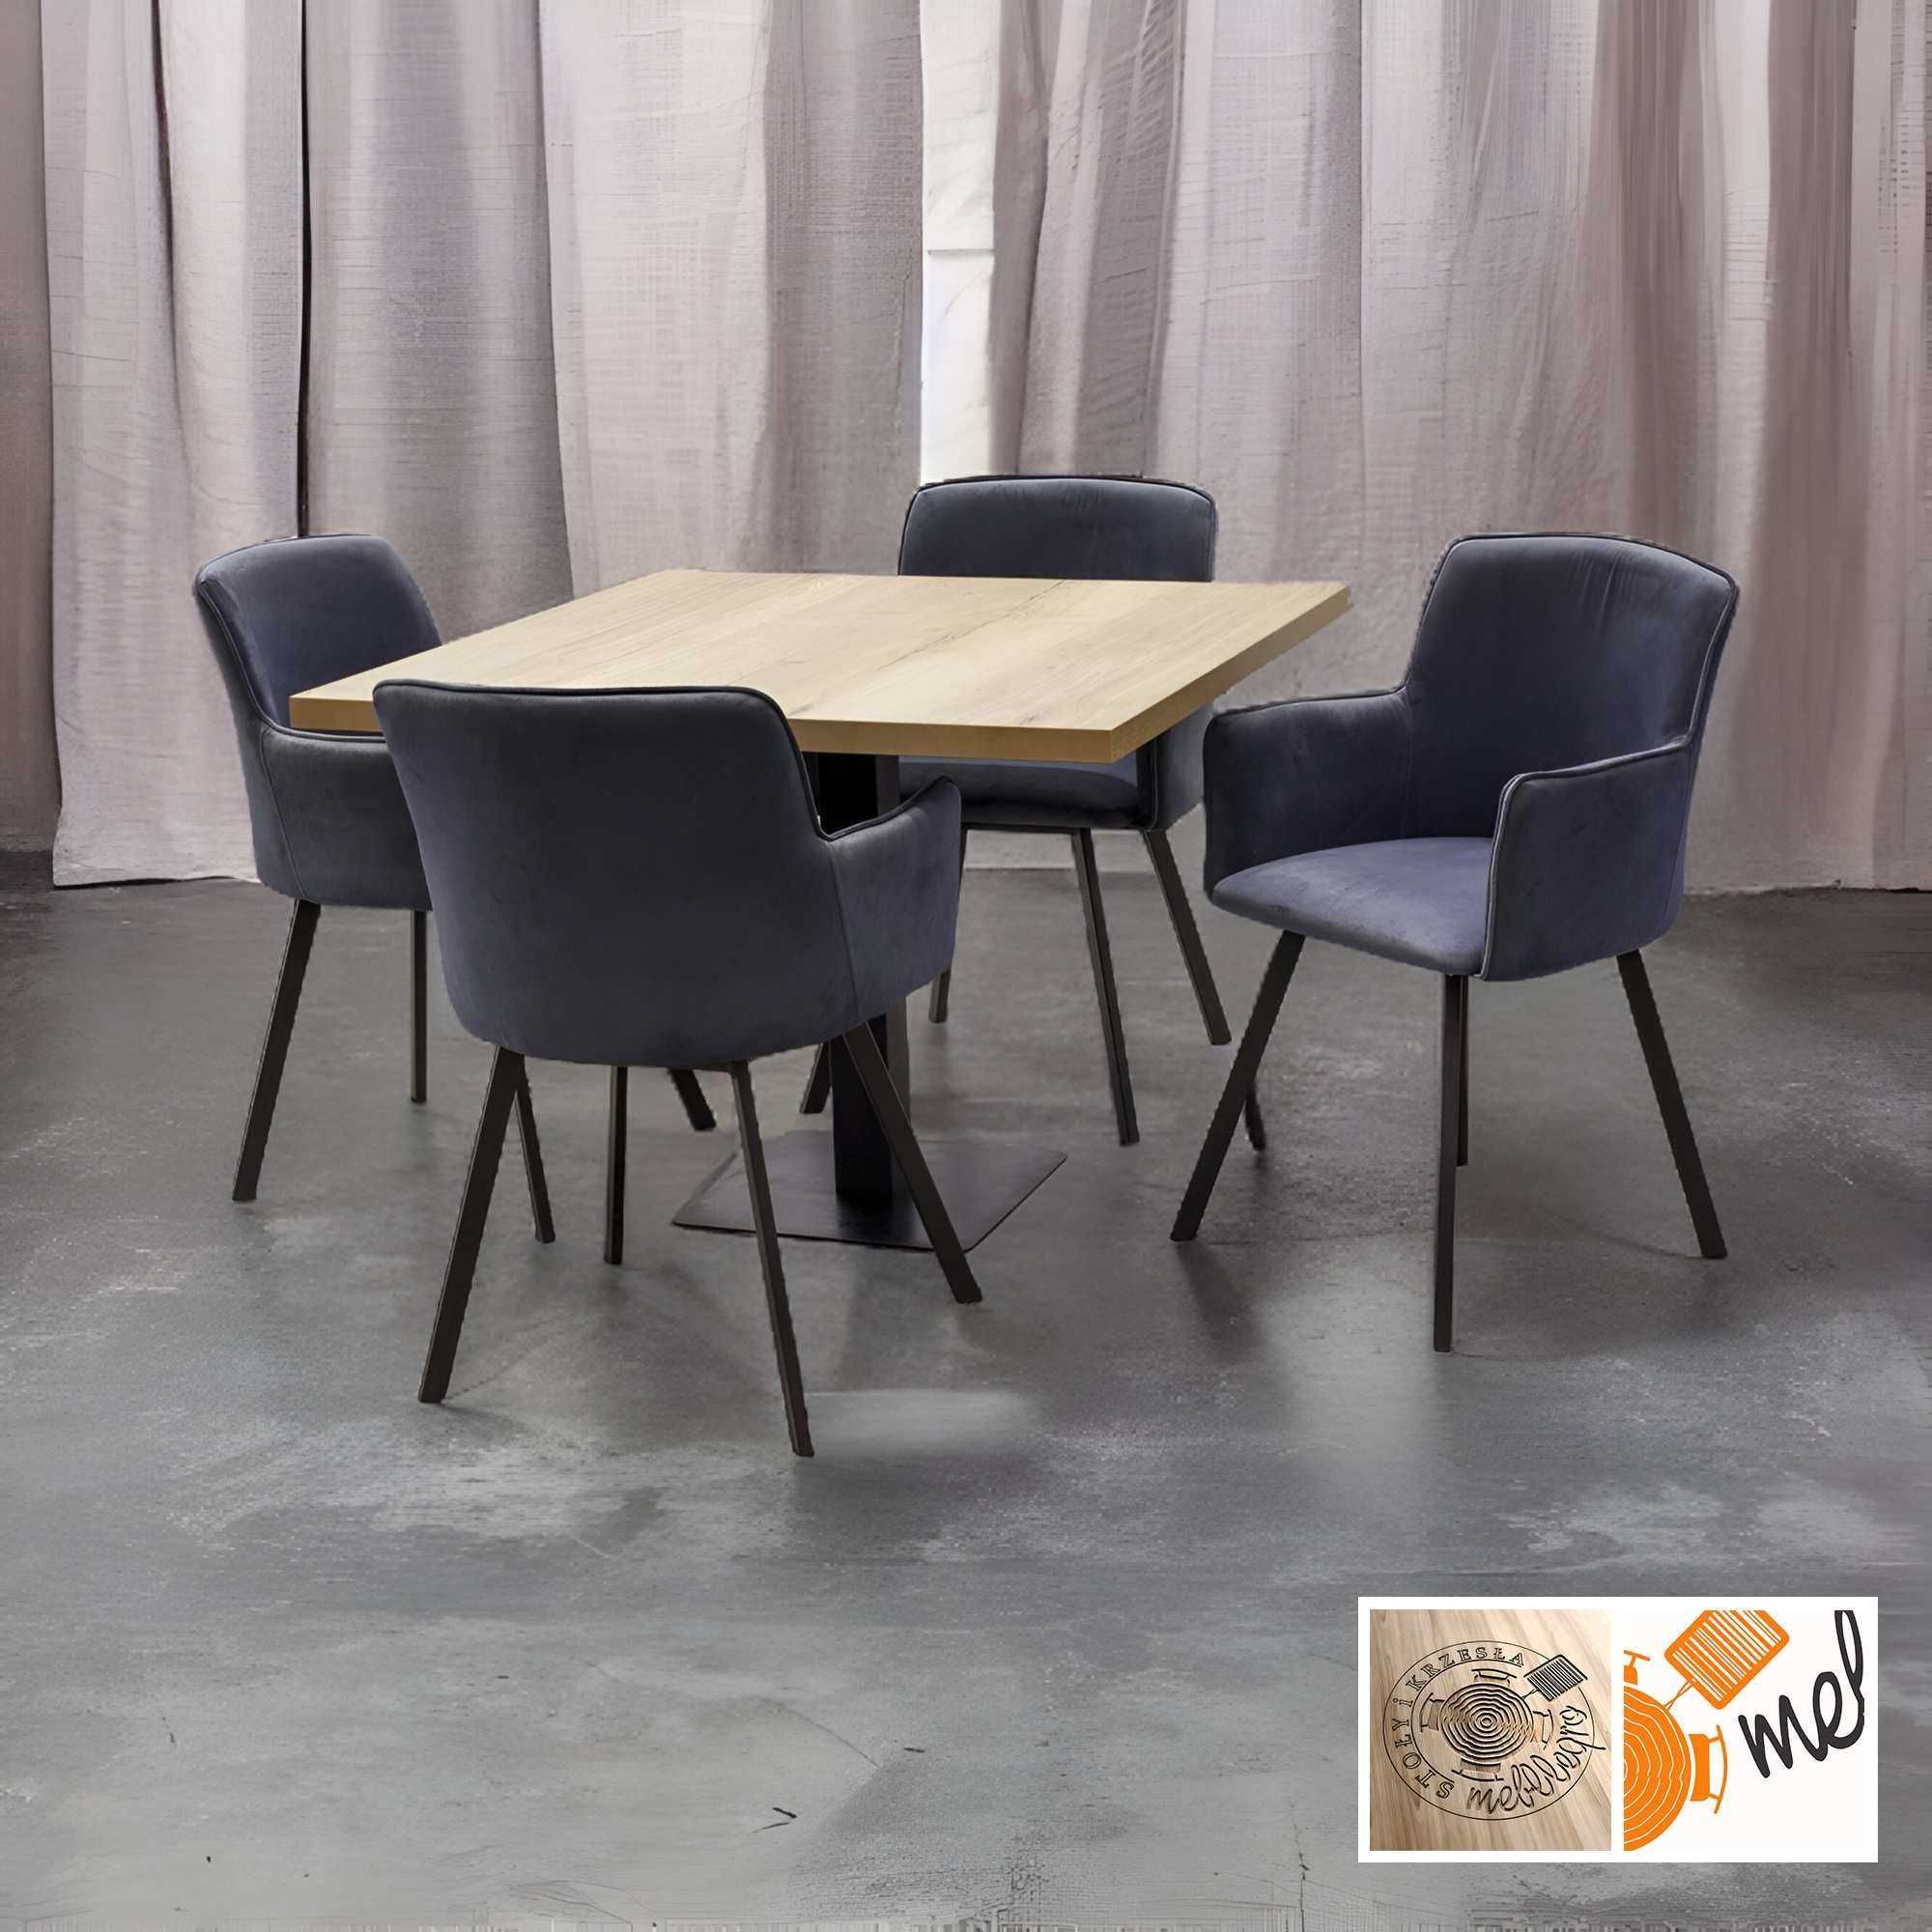 Elegancki Kwadratowy stolik na 1 nodze Z41 i krzesła fotelowe